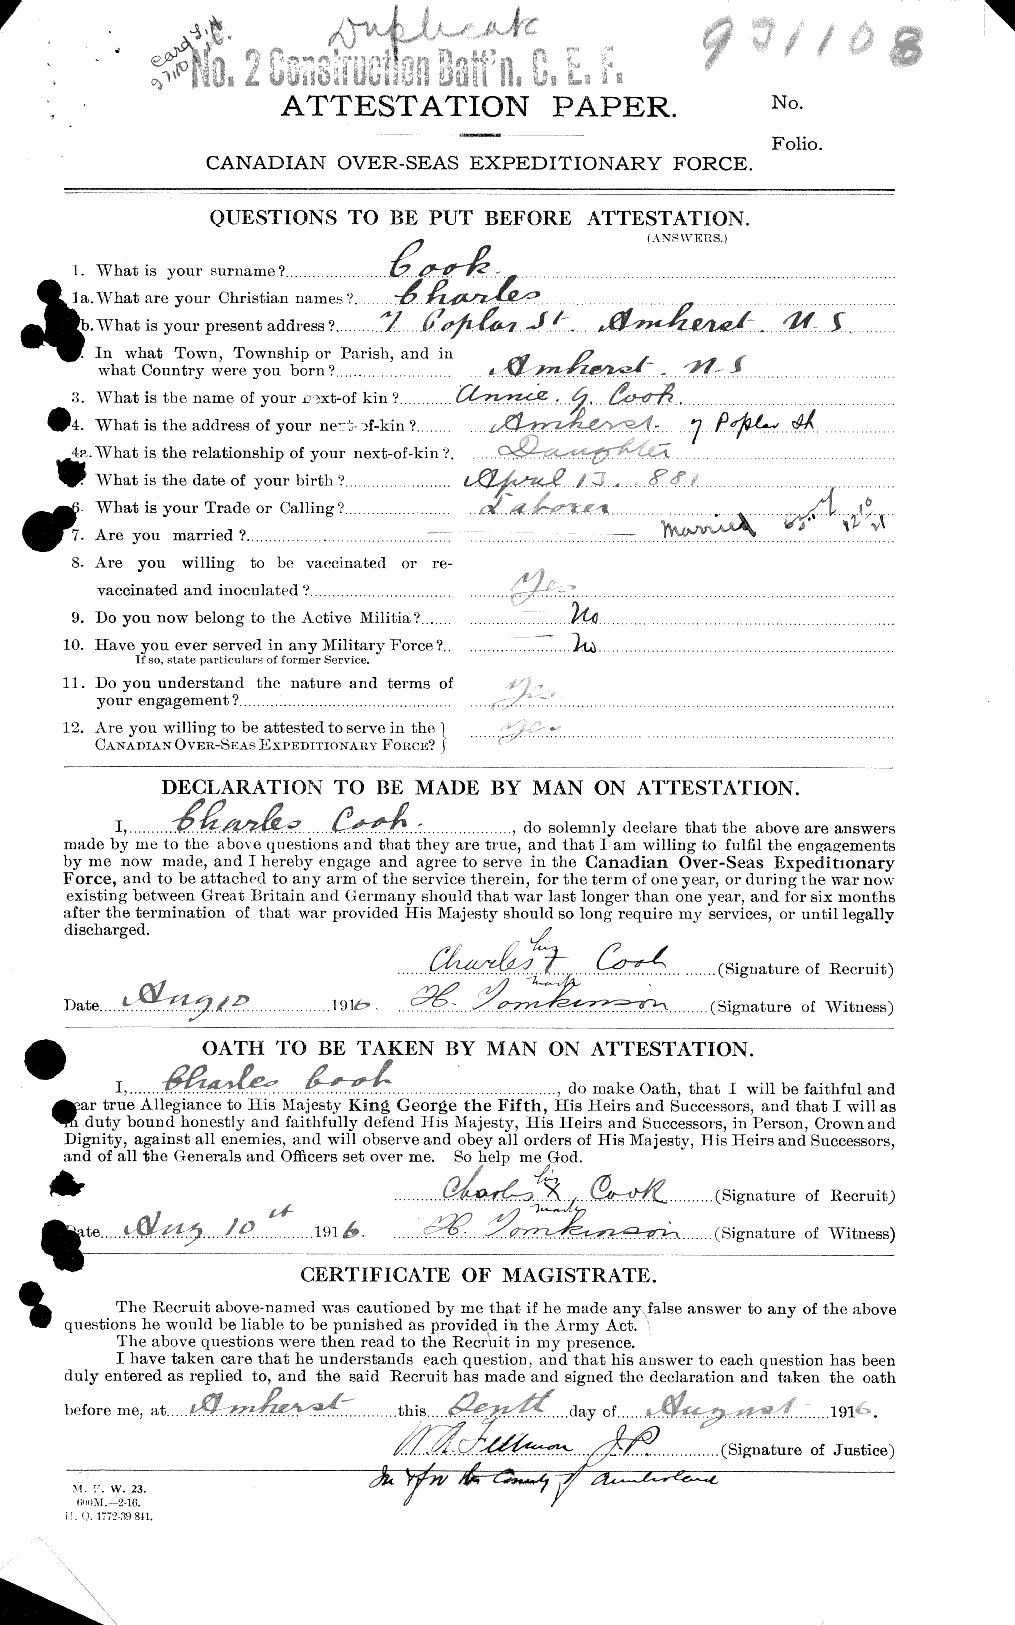 Dossiers du Personnel de la Première Guerre mondiale - CEC 041222a